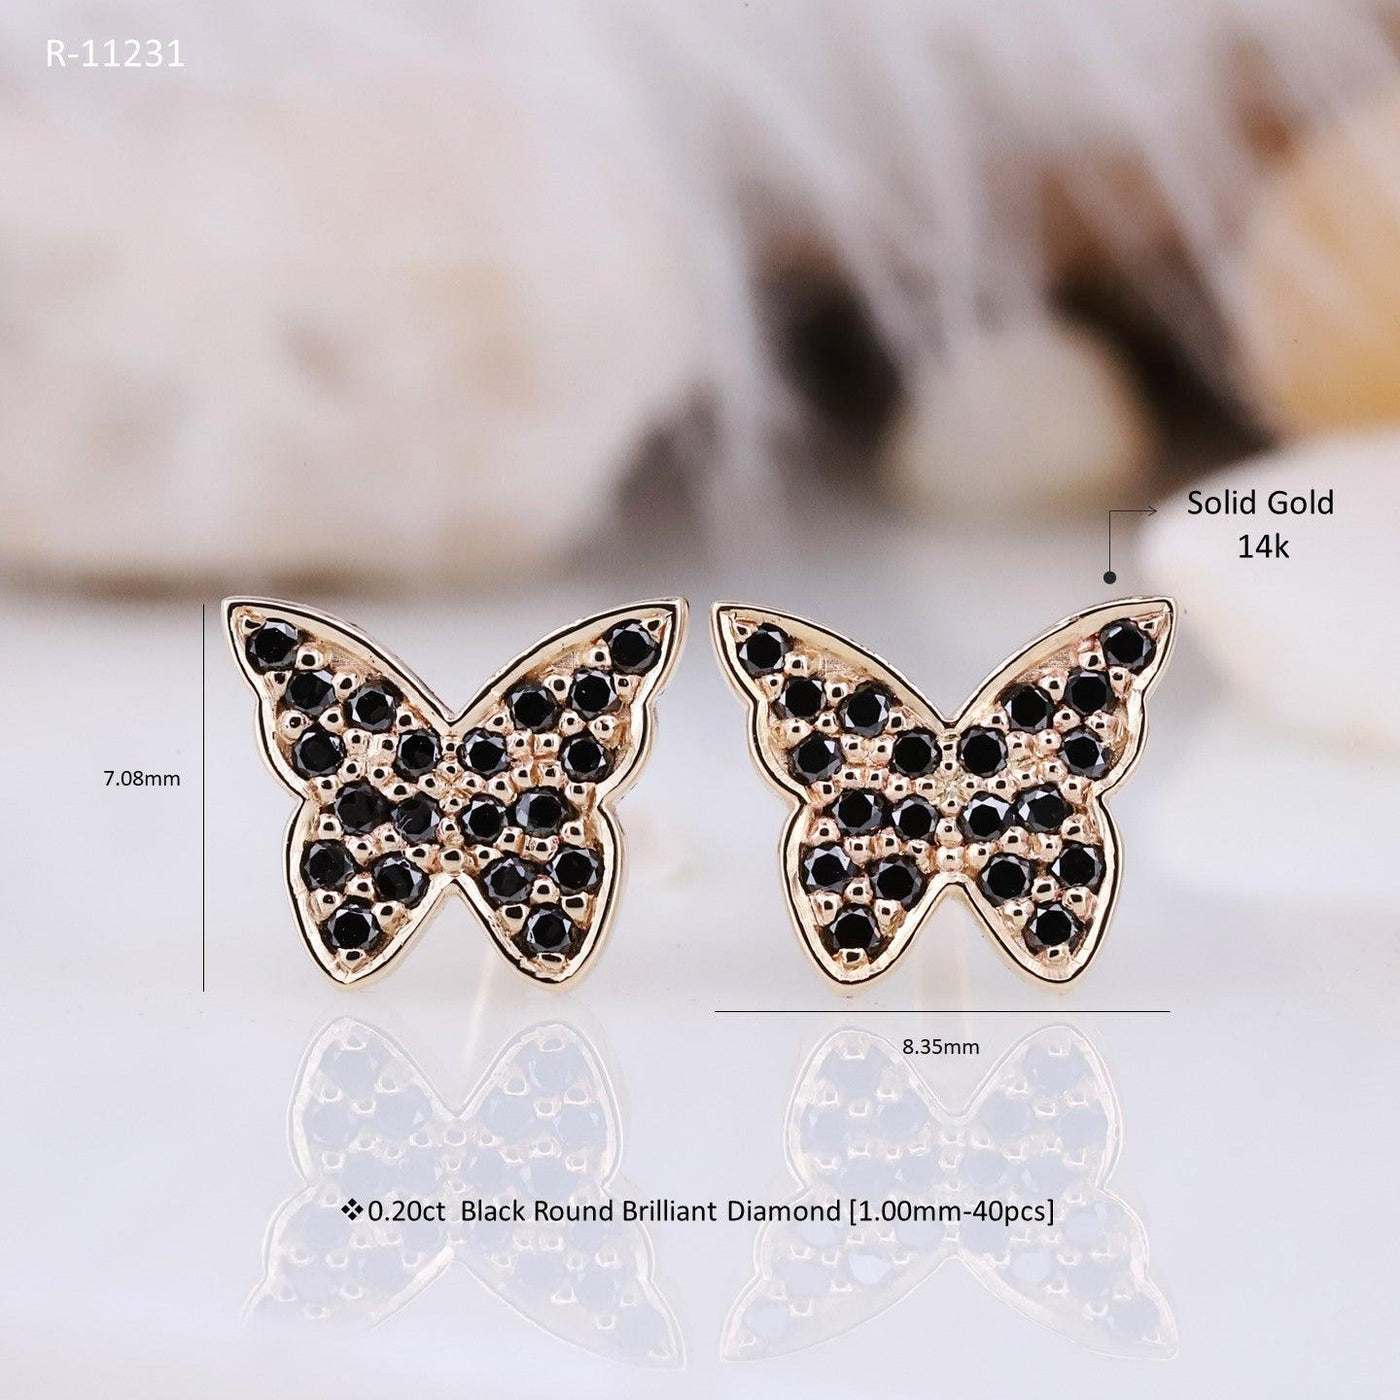 Butterfly earrings small gold hoop earrings hoop earrings gold earrings bridal earrings - Rubysta